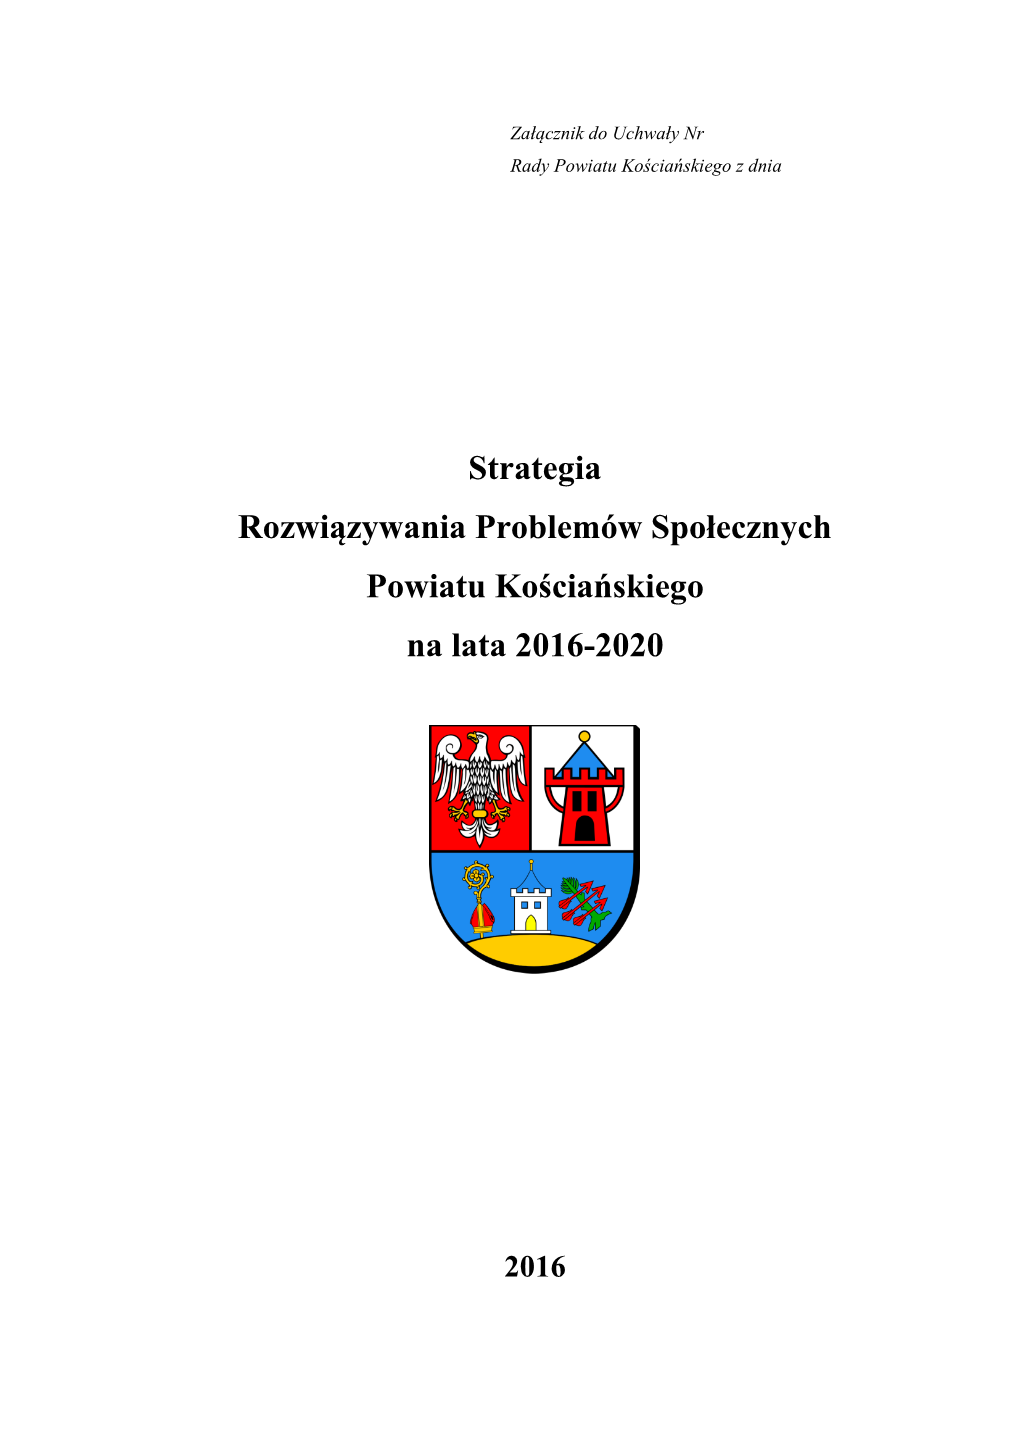 Strategia Rozwiązywania Problemów Społecznych Powiatu Kościańskiego Na Lata 2016-2020